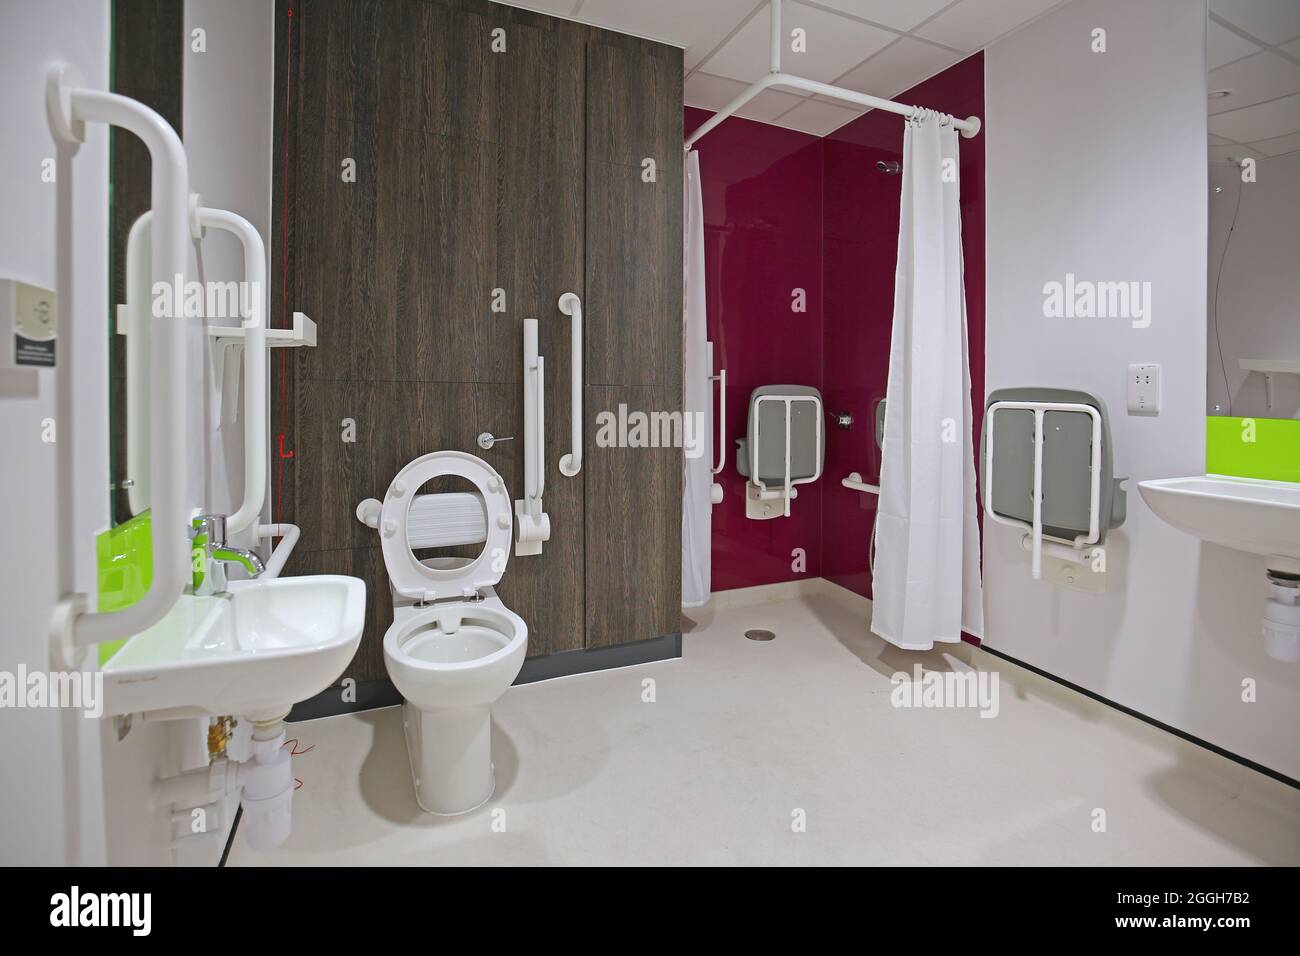 Einrichtung eines behindertengerechten Toiletten- und Duschraums in einem neuen Londoner Gesundheitszentrum. Zeigt eine barrierefreie Dusche. Stockfoto